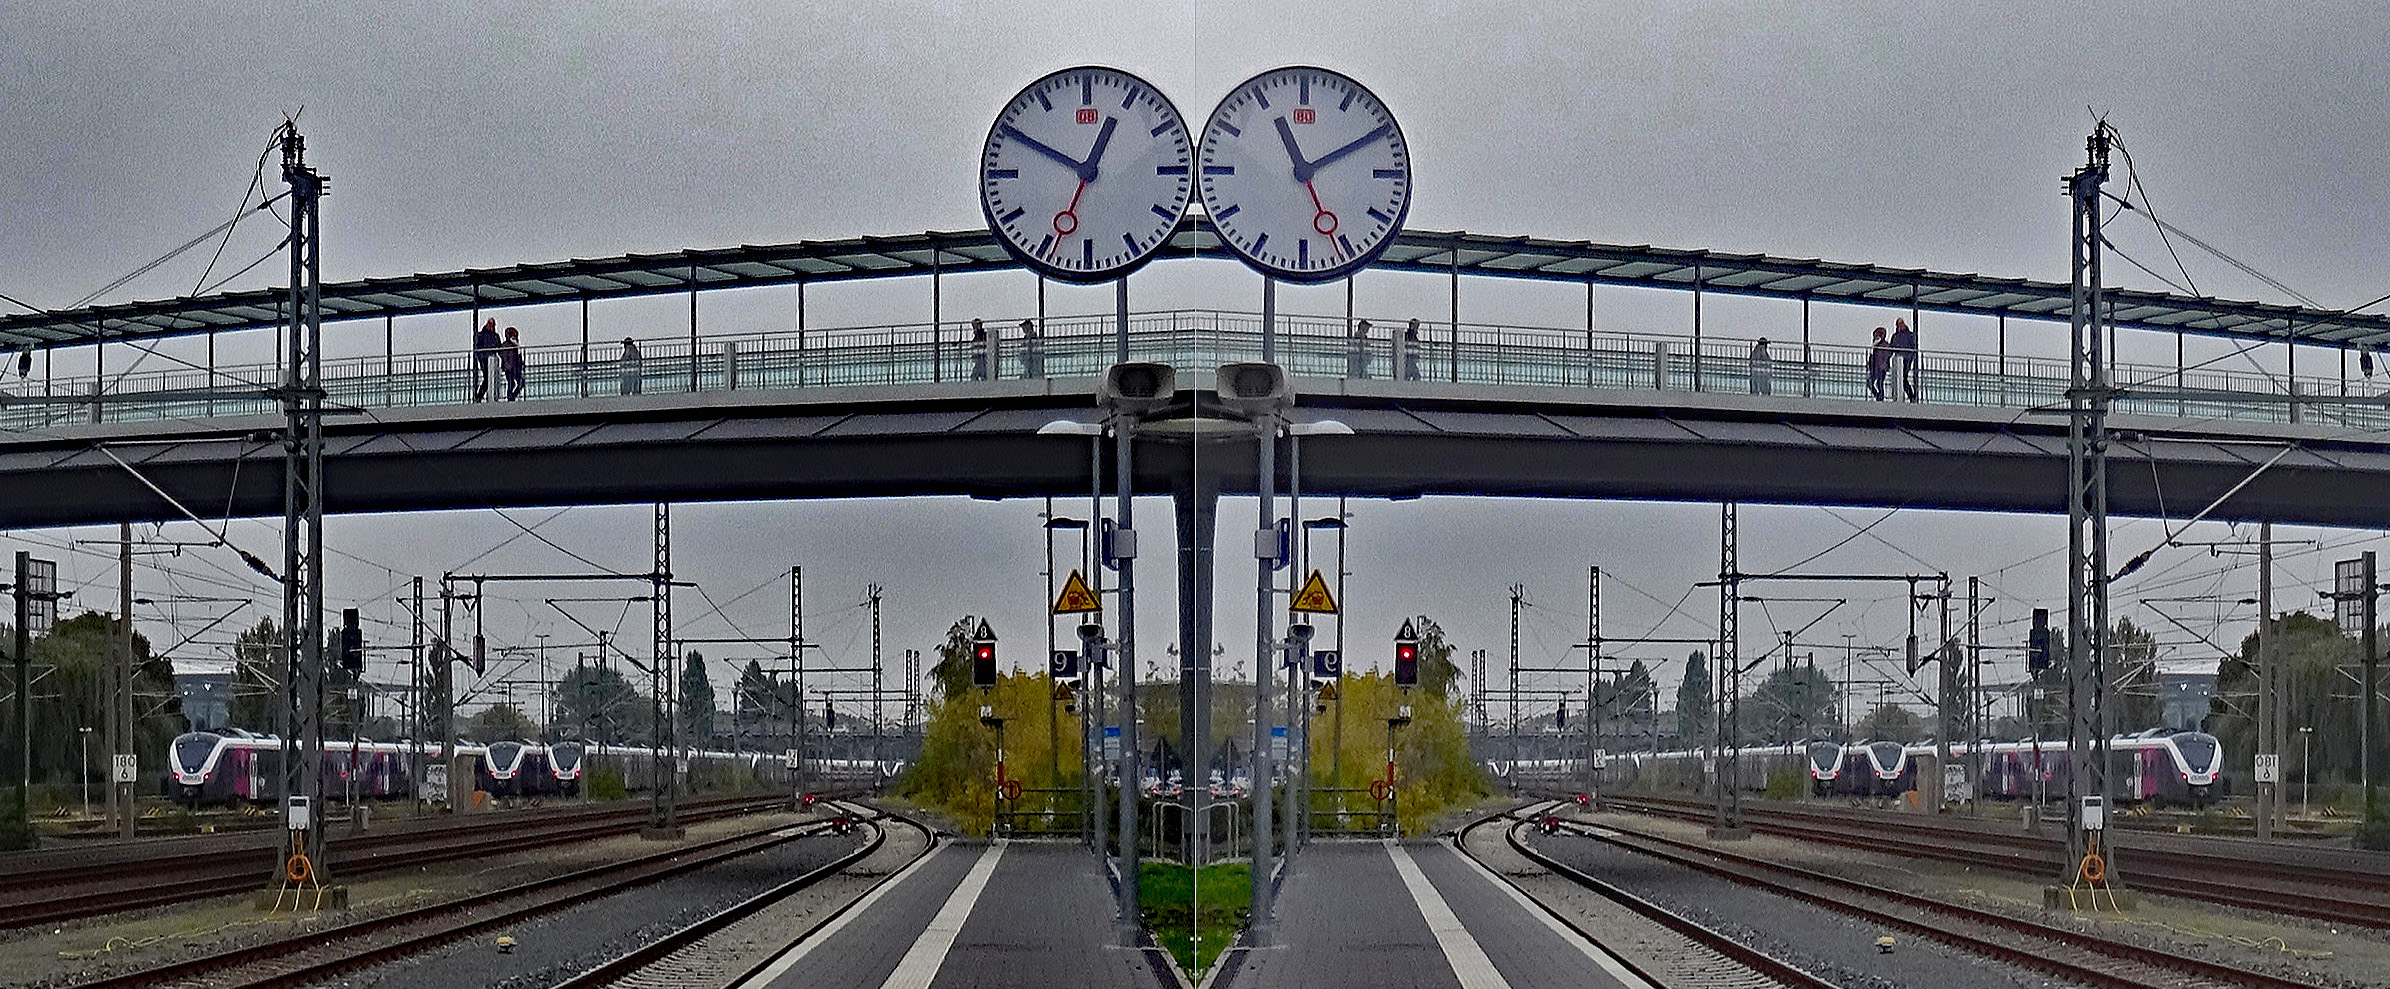 Der Bahnhof und die Zeit